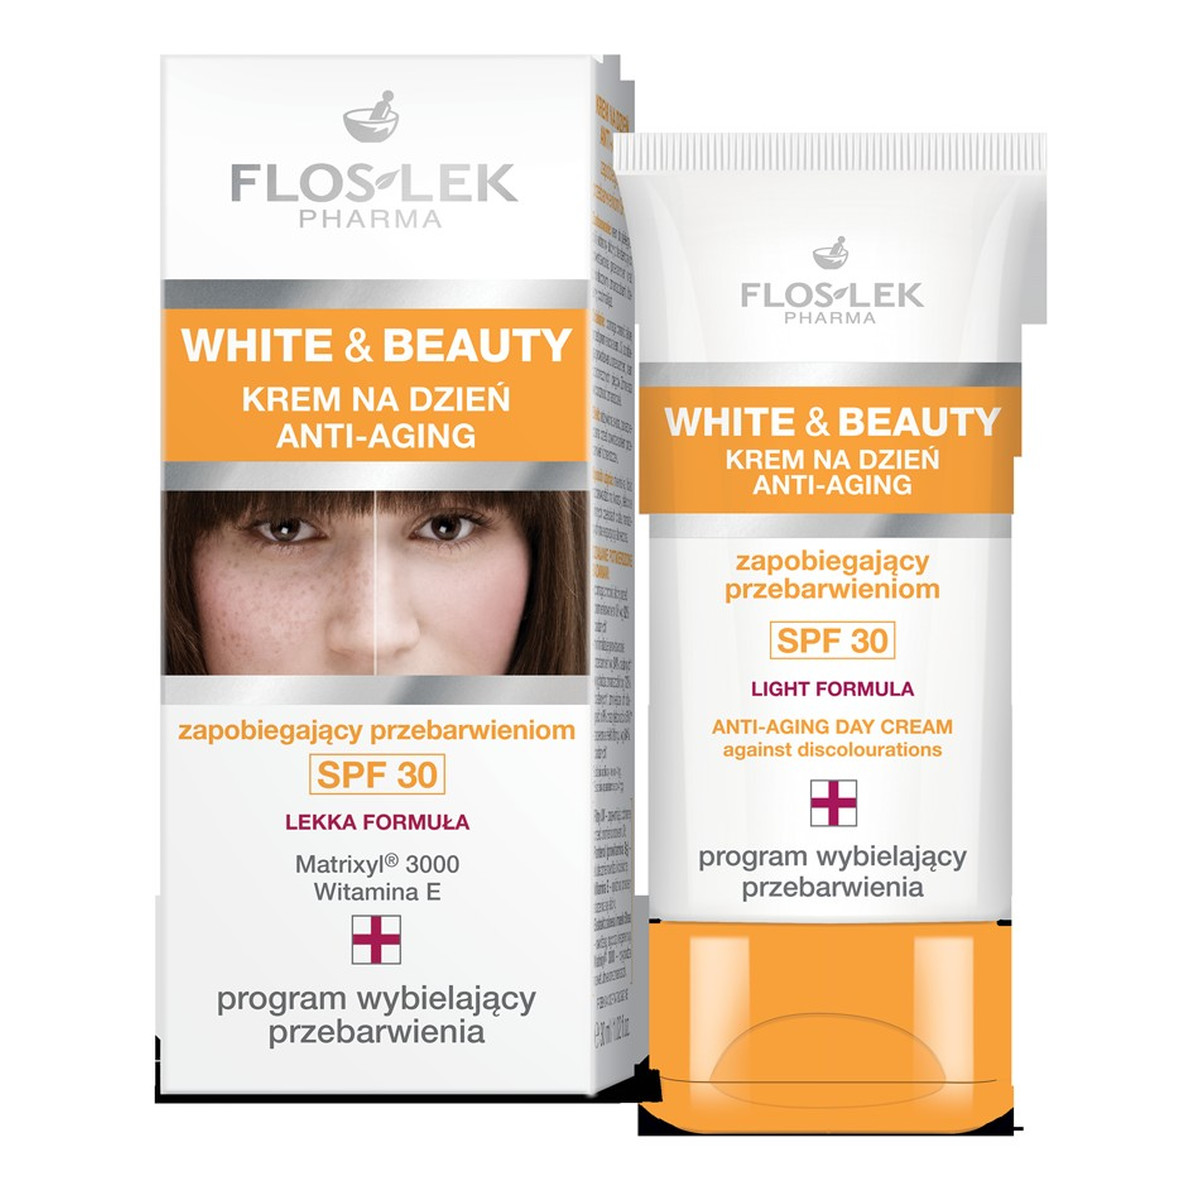 FlosLek White & Beauty Krem ANTI-AGING zapobiegiegający powstawaniu przebarwień SPF 30